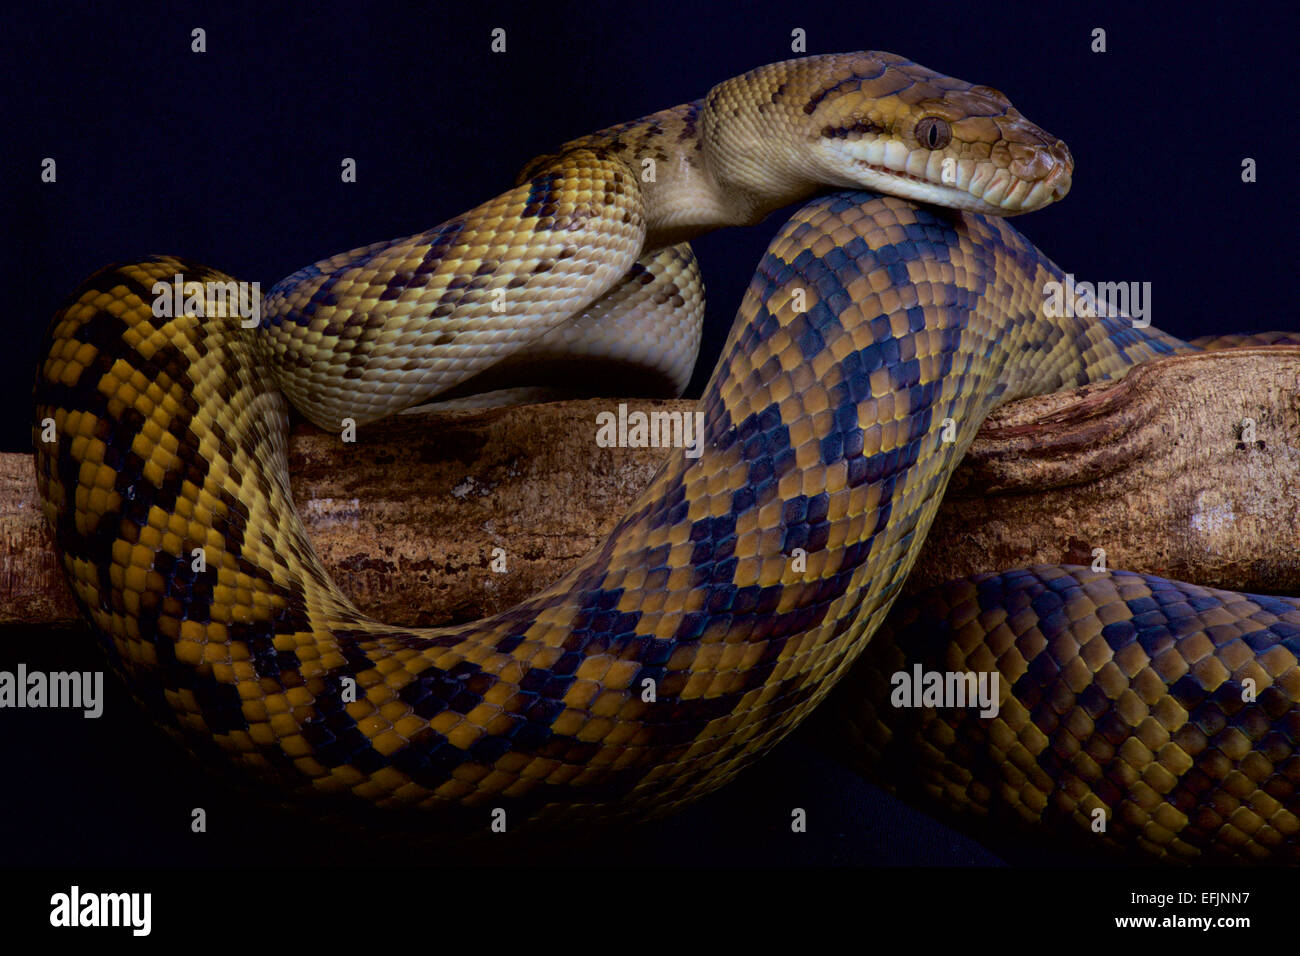 Australian scrub python / Morelia kinghorni Stock Photo